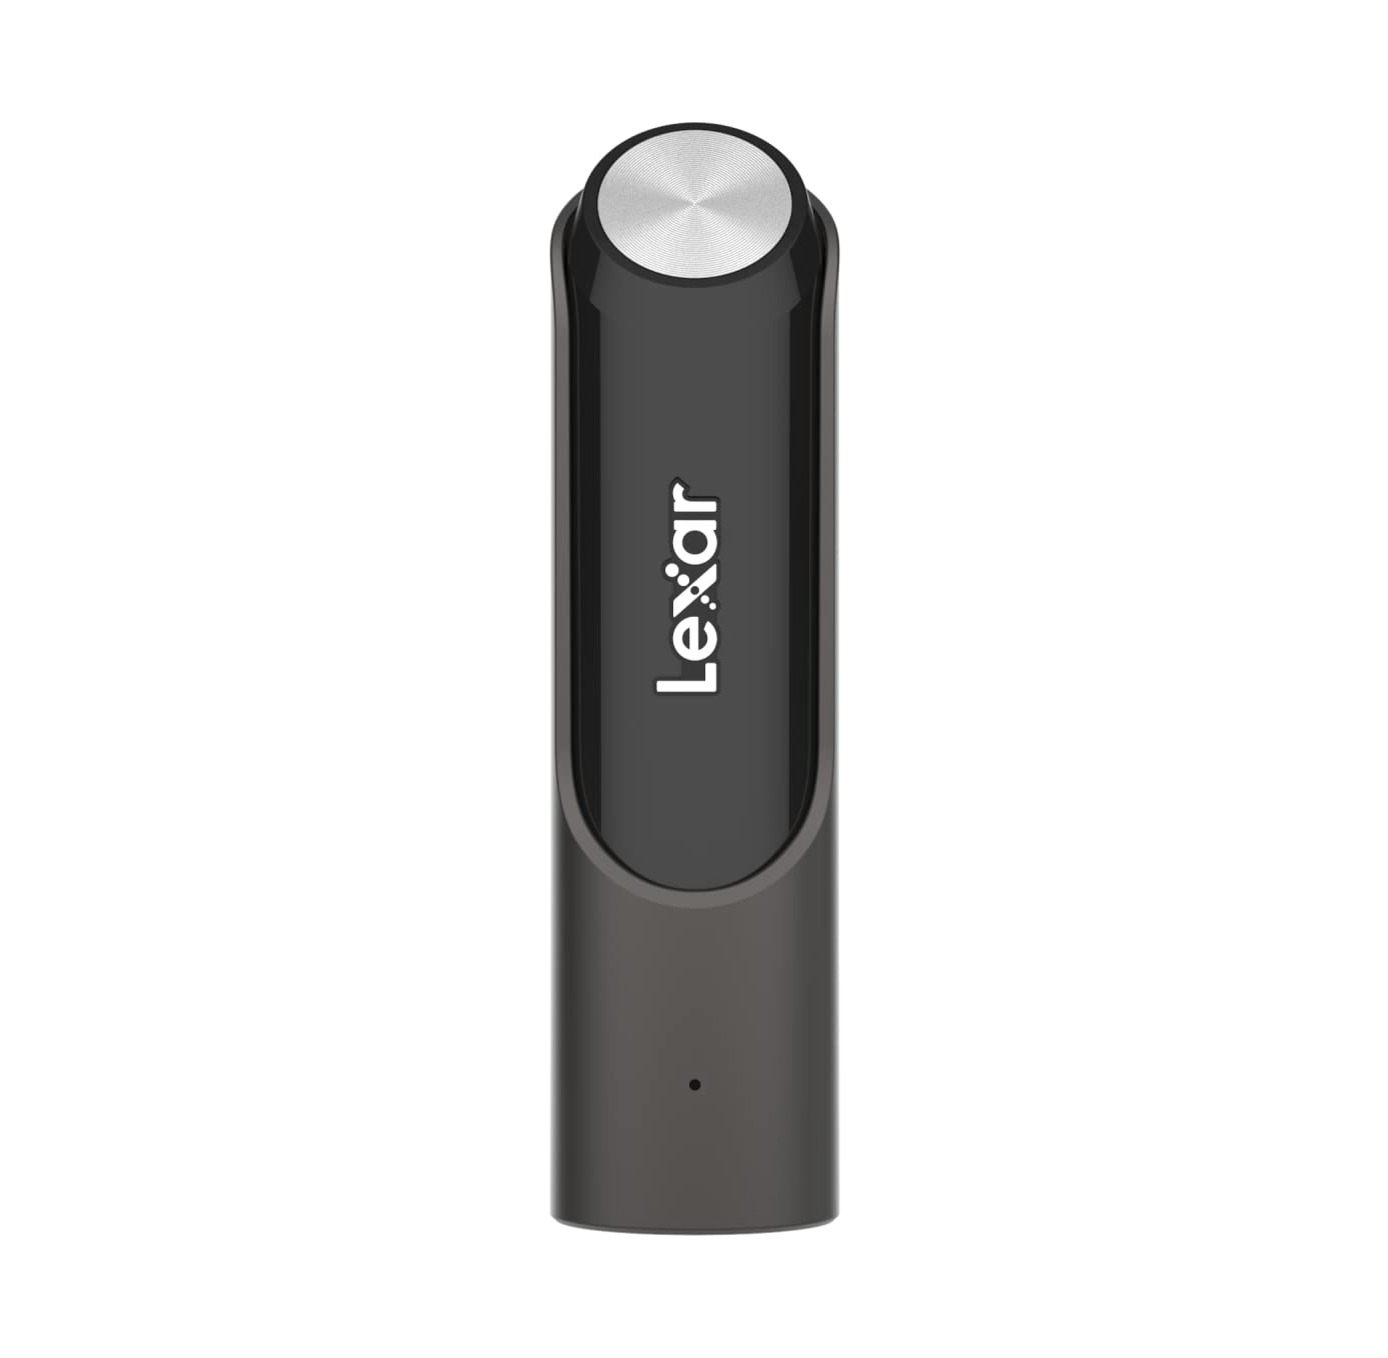 Lexar 256GB JumpDrive P30 USB 3.2 Gen 1 Flash Drive, External Storage, Up To 450MB/s Read/Write, Durable Metallic Design, Titanium (LJDP030256G-RNQNG) $35.49